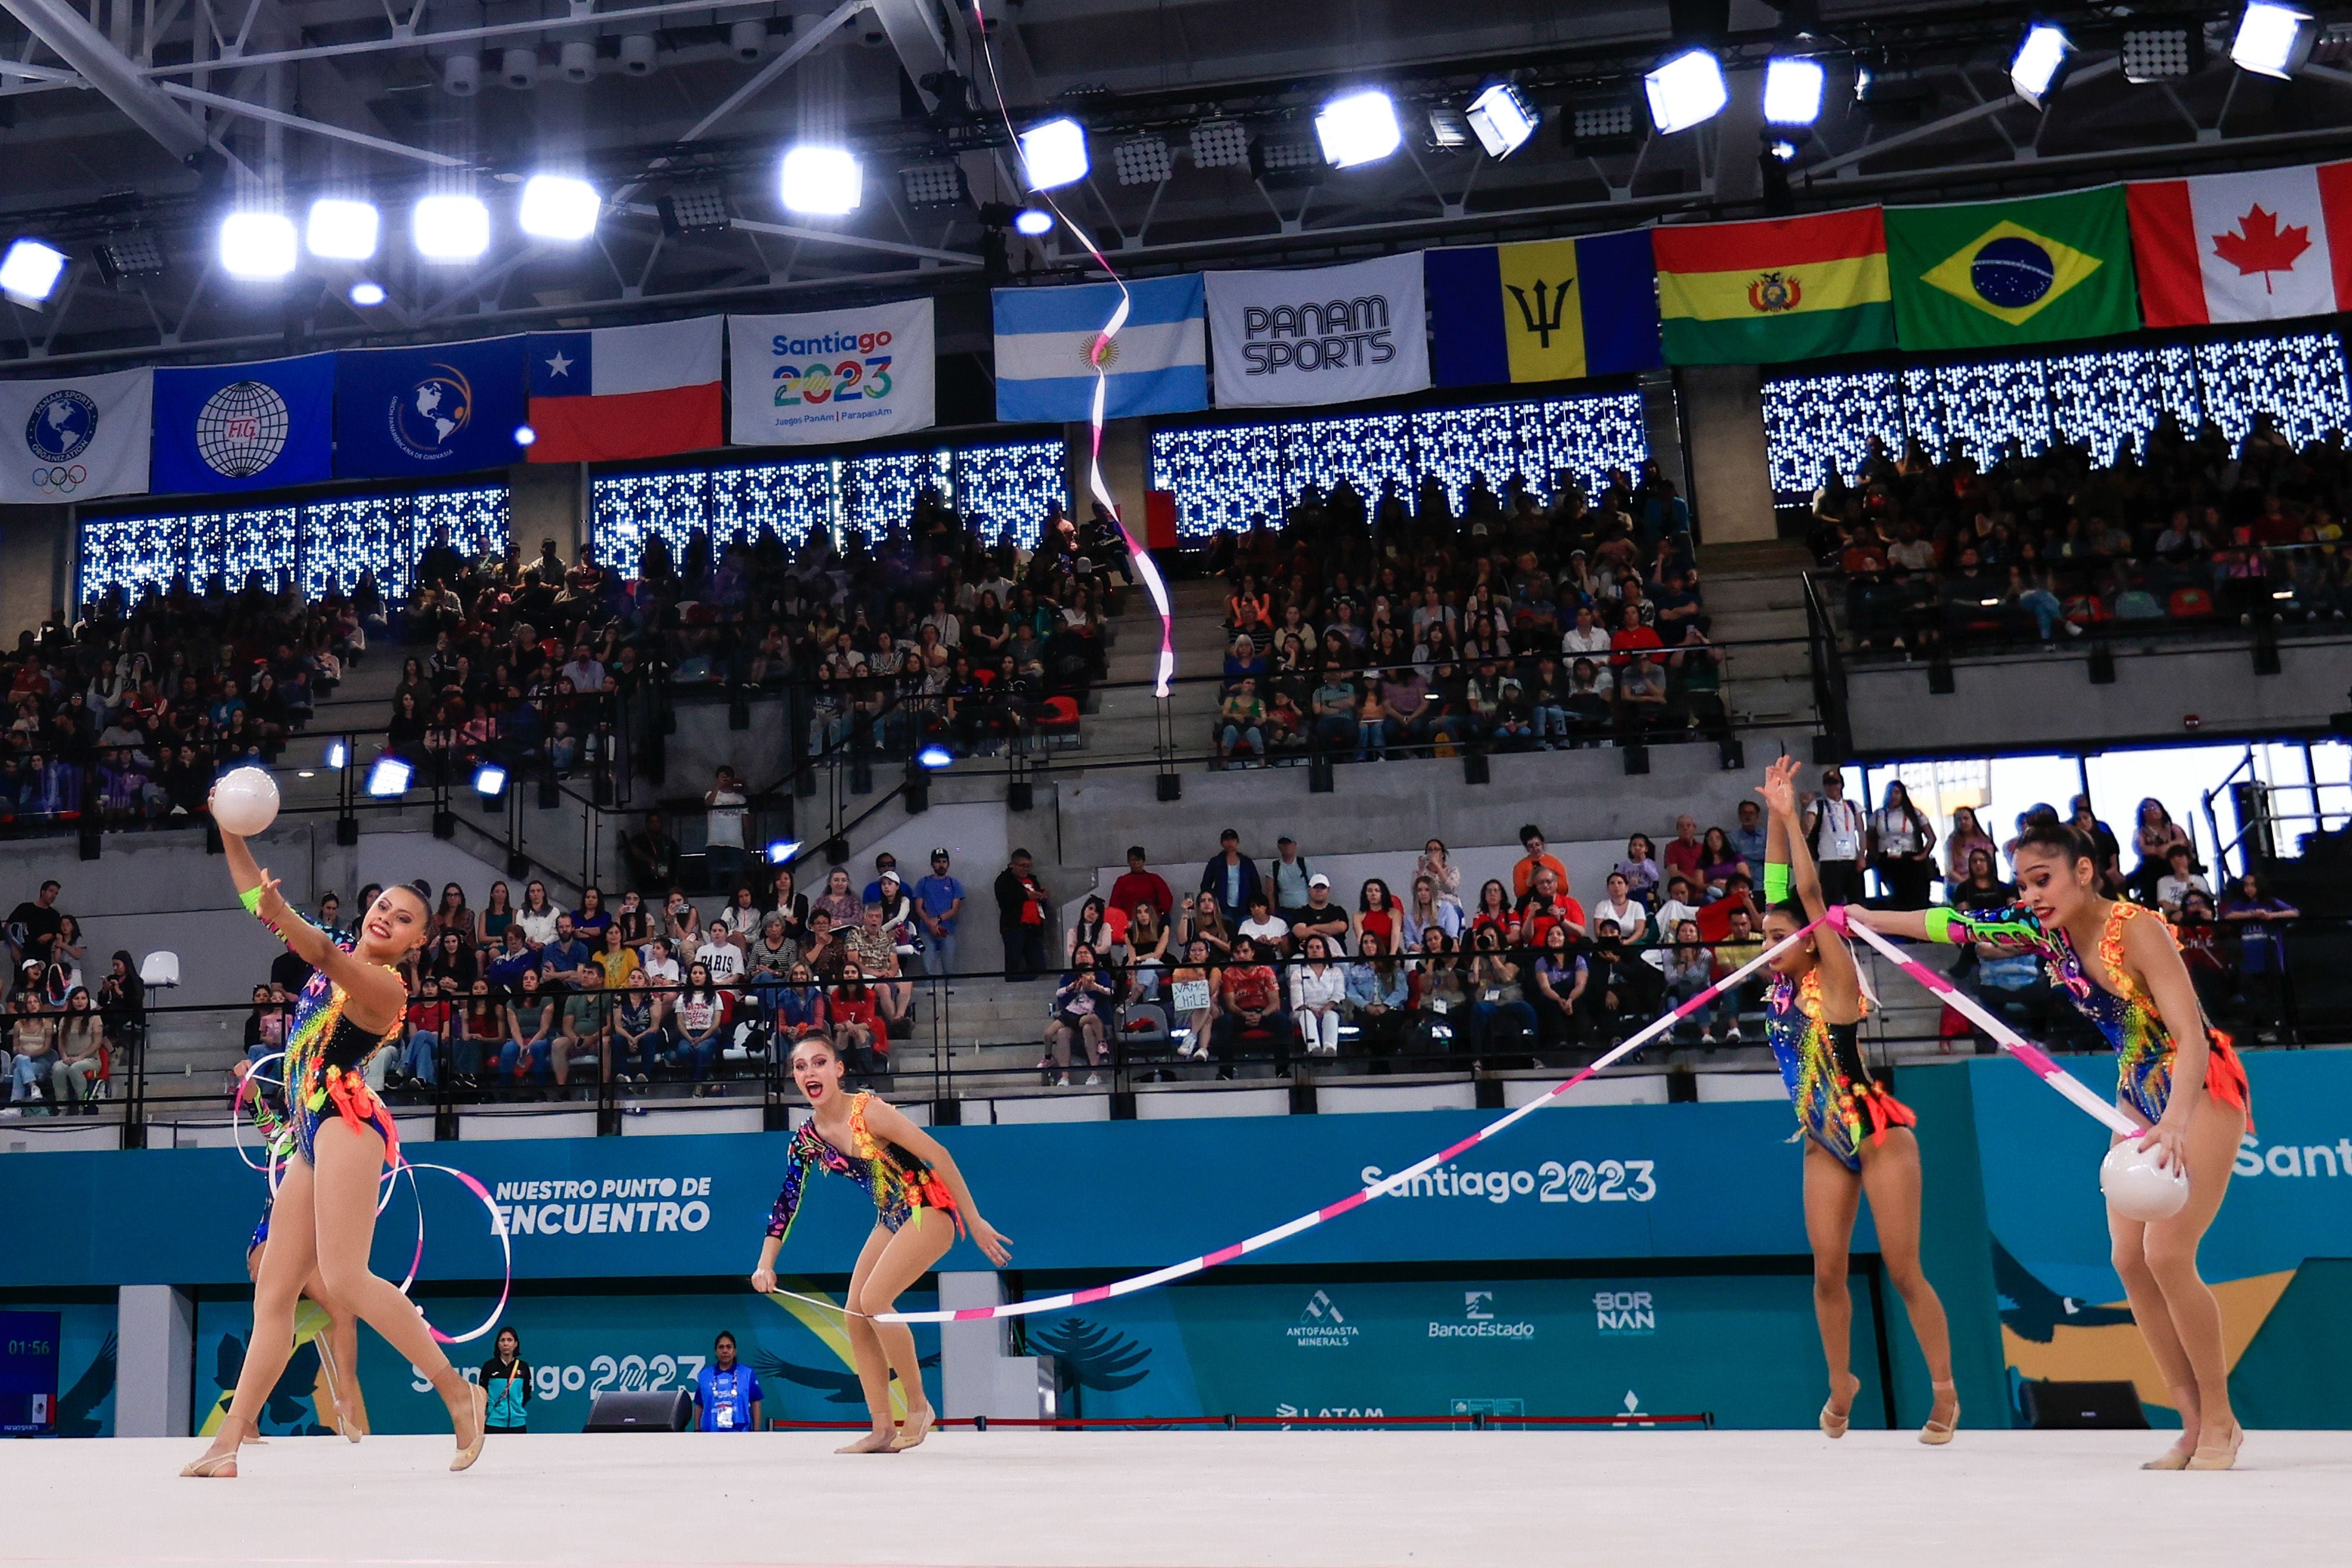 Gimnasia artística es una de las disciplinas de los próximos Juegos Olímpicos. (Foto: Mexsport)